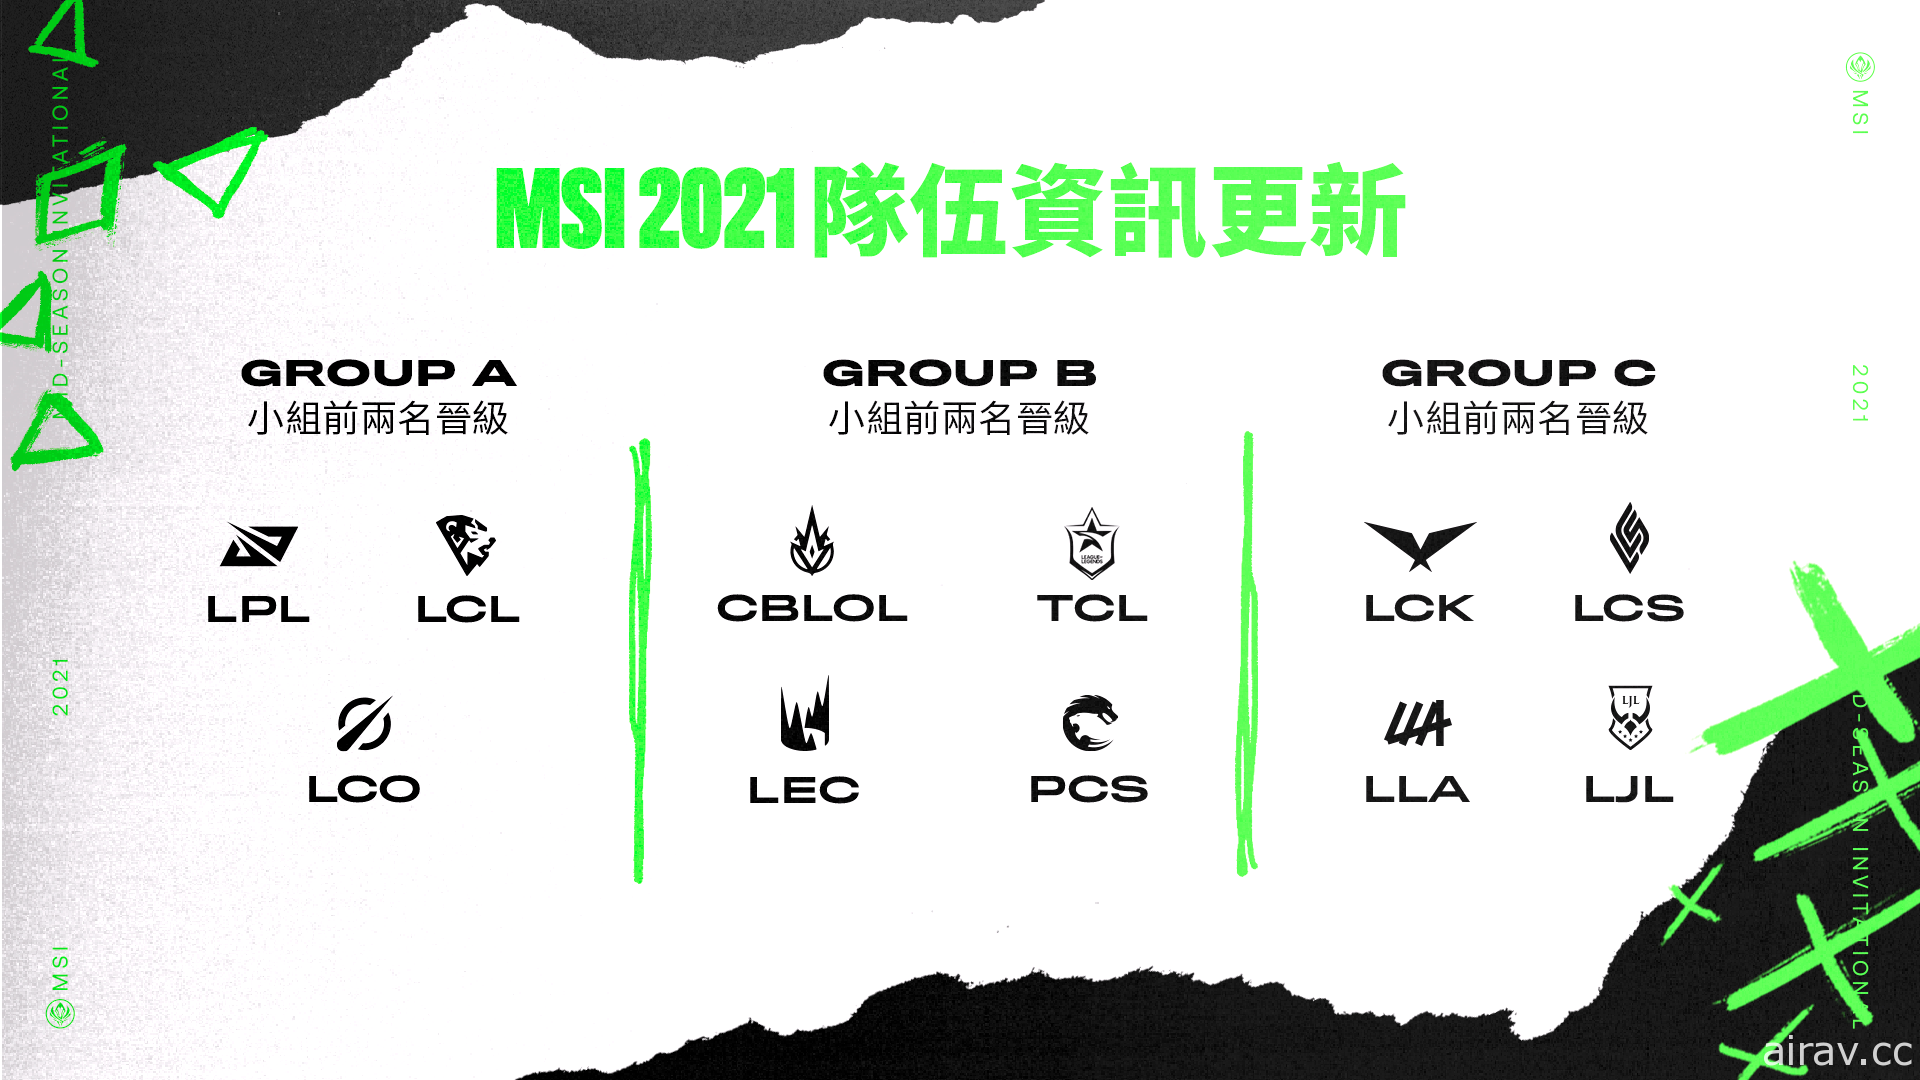 《英雄聯盟》越南 VCS 代表隊因疫情影響 不參加 2021 MSI 季中邀請賽